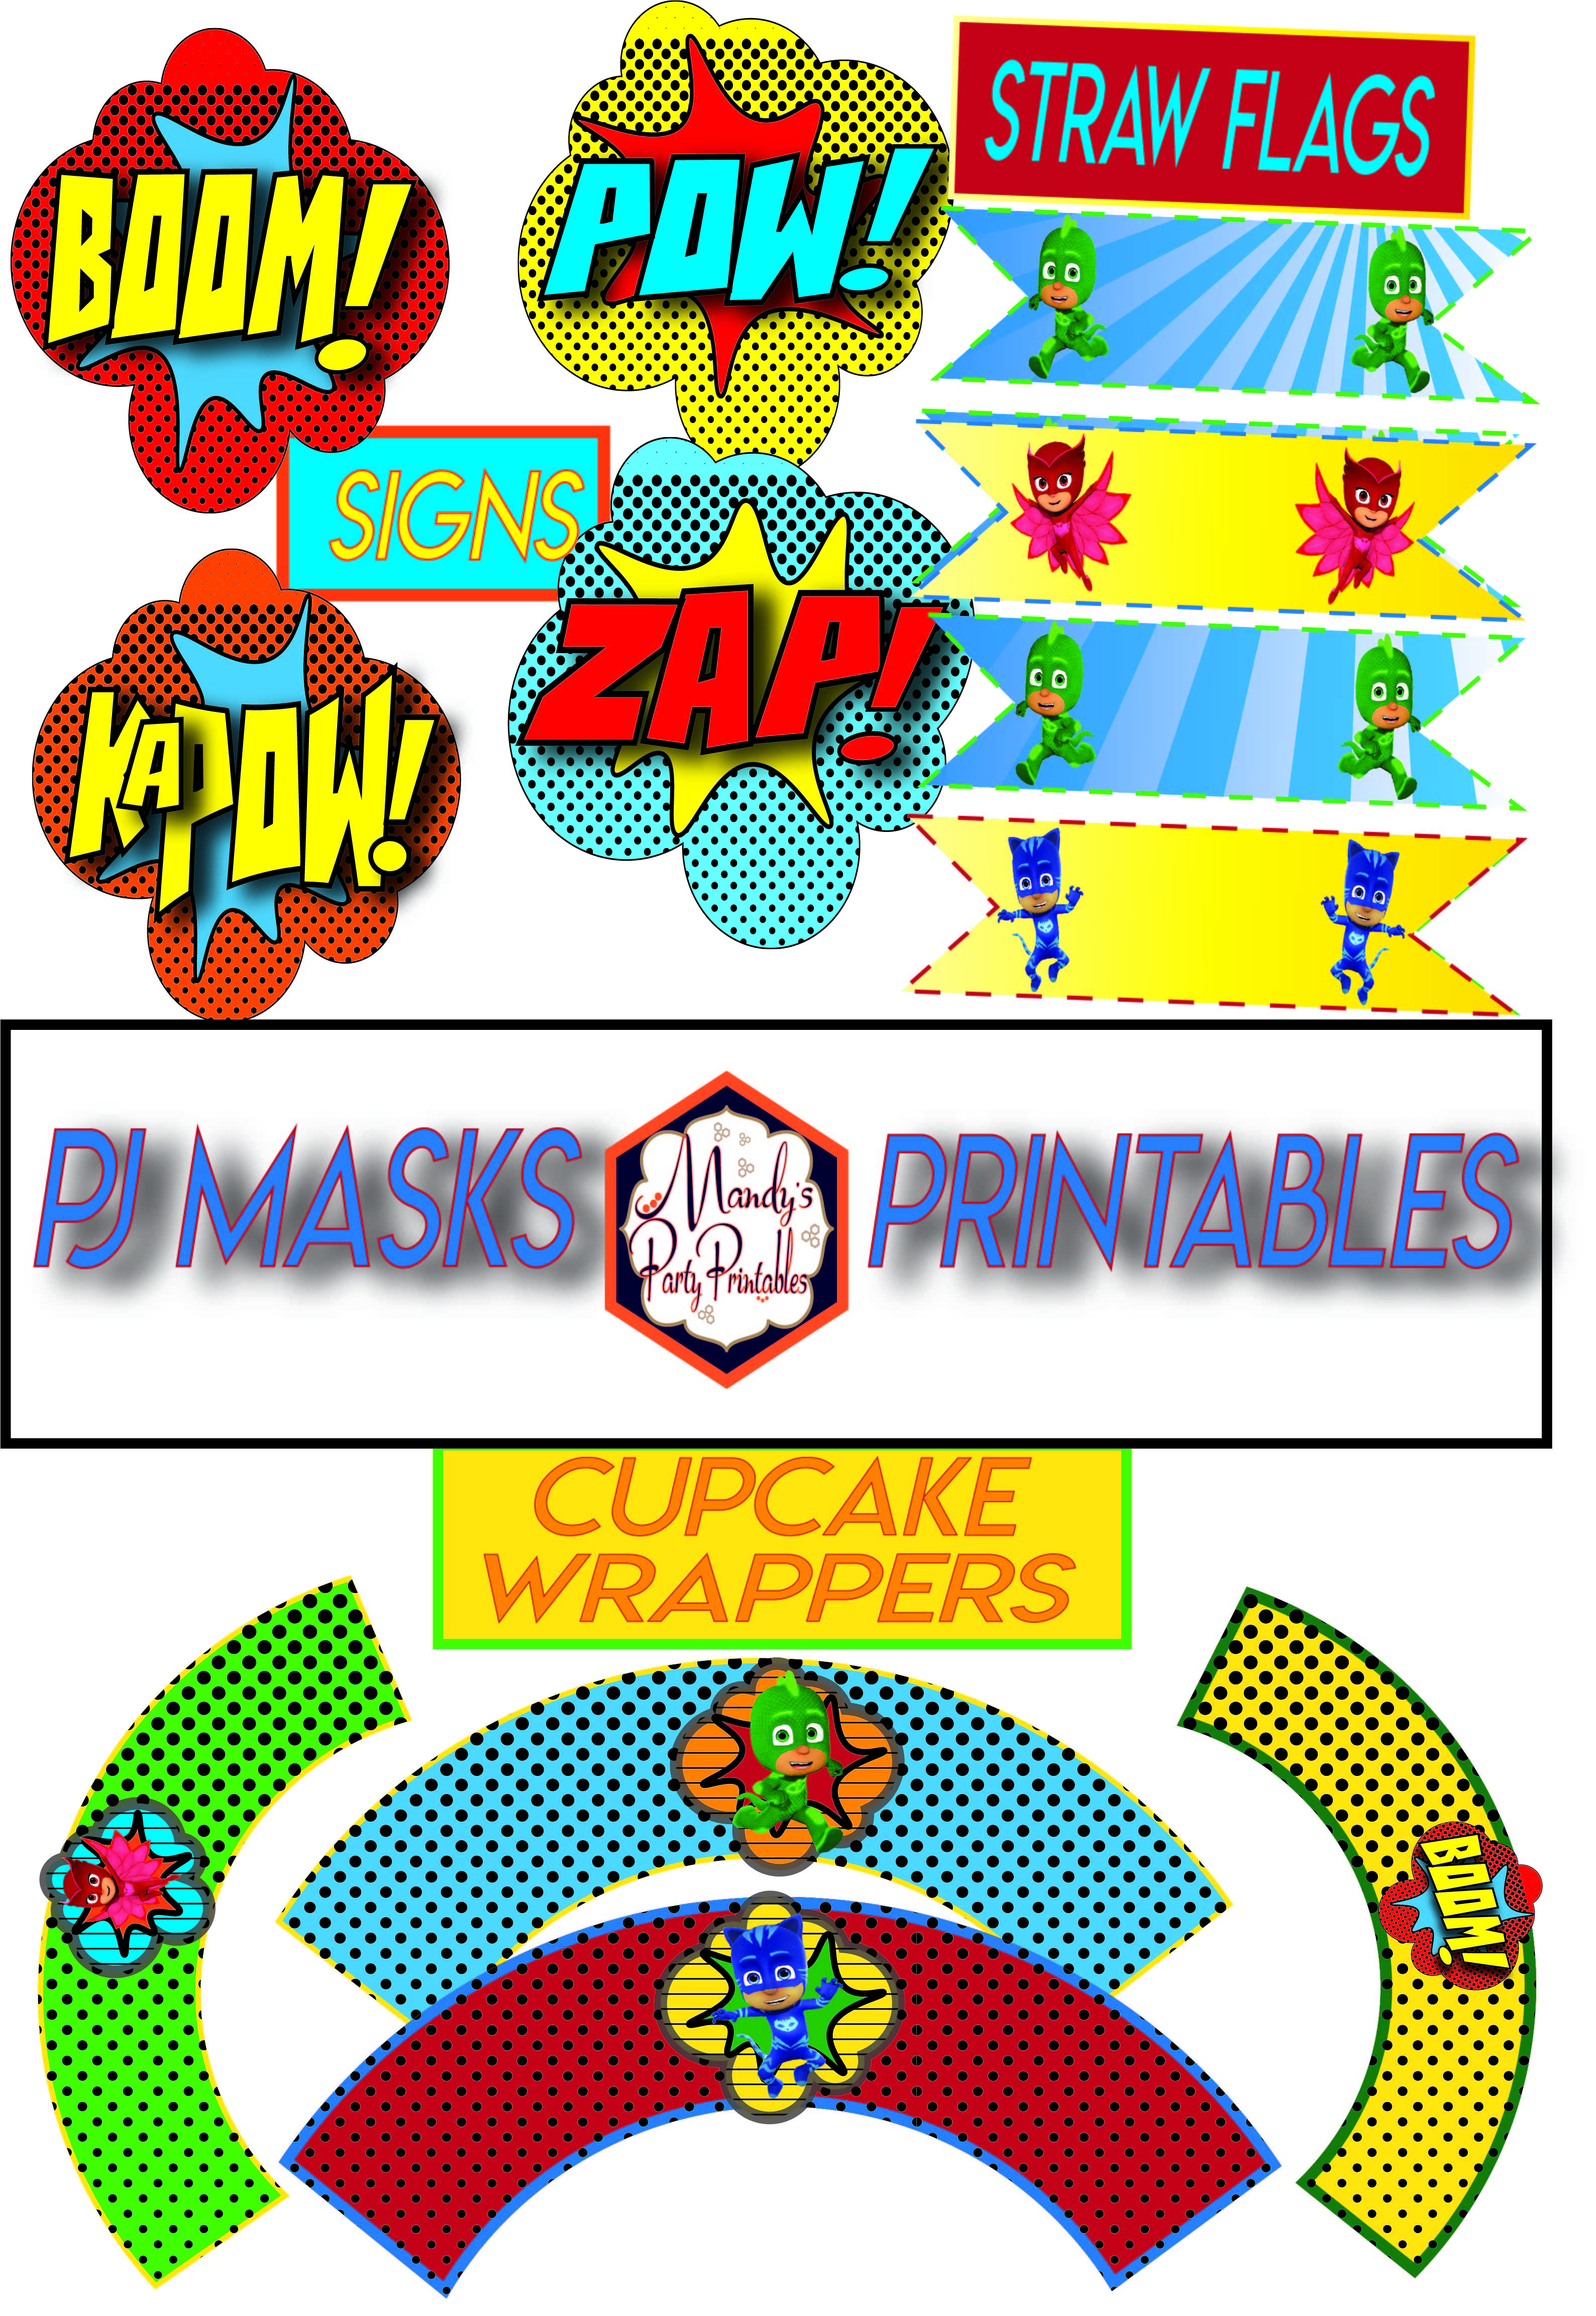 Free PJ Masks Party Printables Round 2 via Mandy's Party Printables